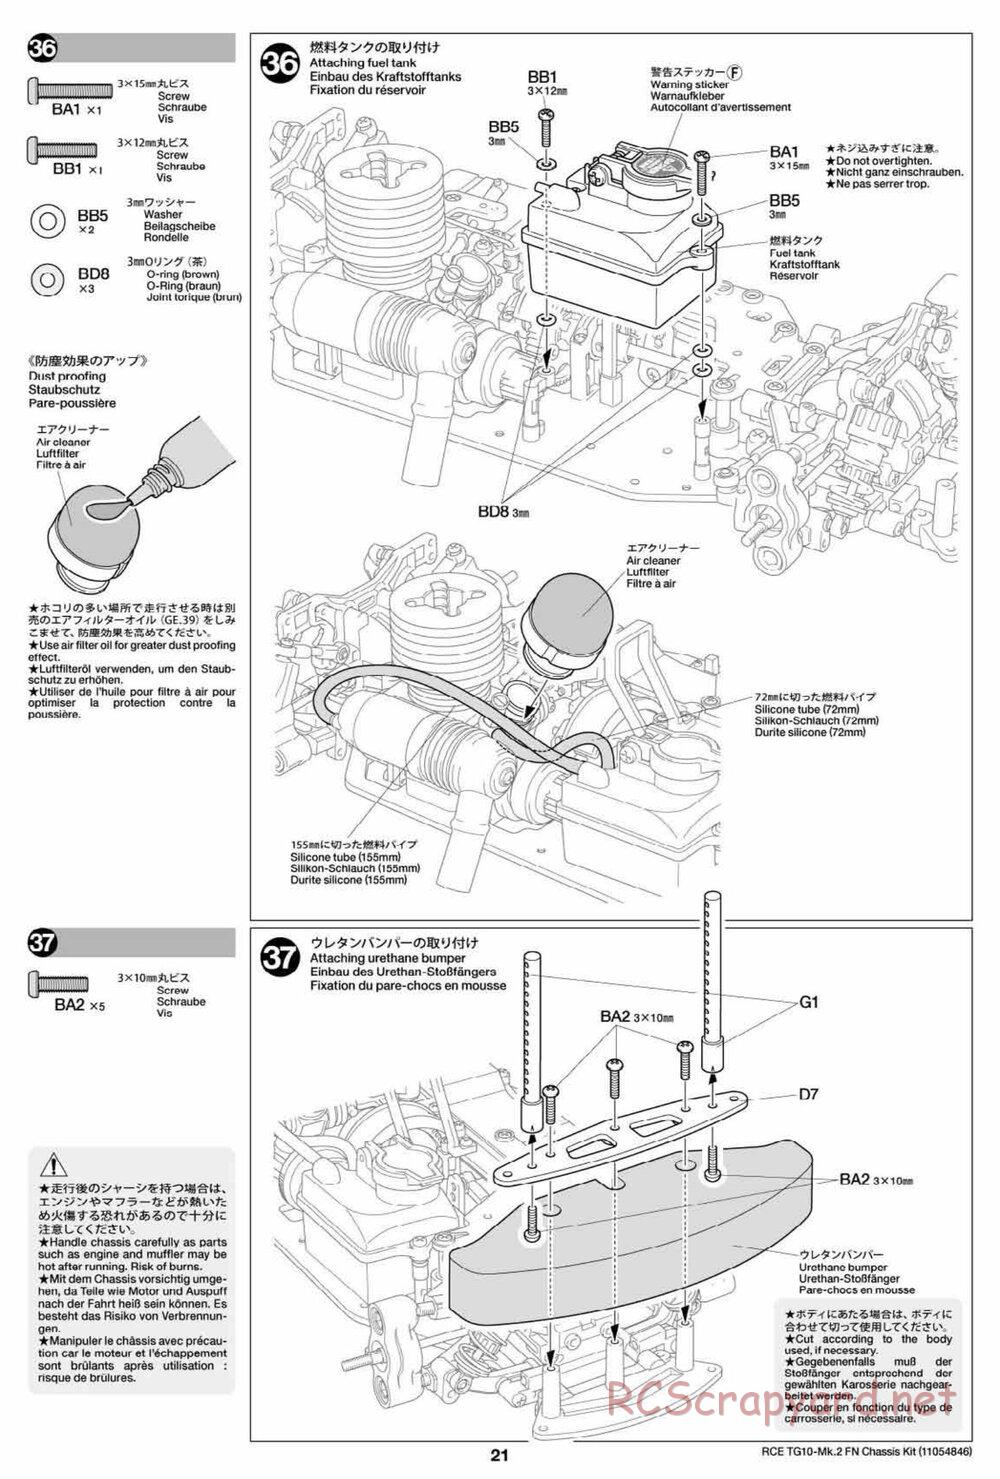 Tamiya - TG10 Mk.2 FN Chassis - Manual - Page 21